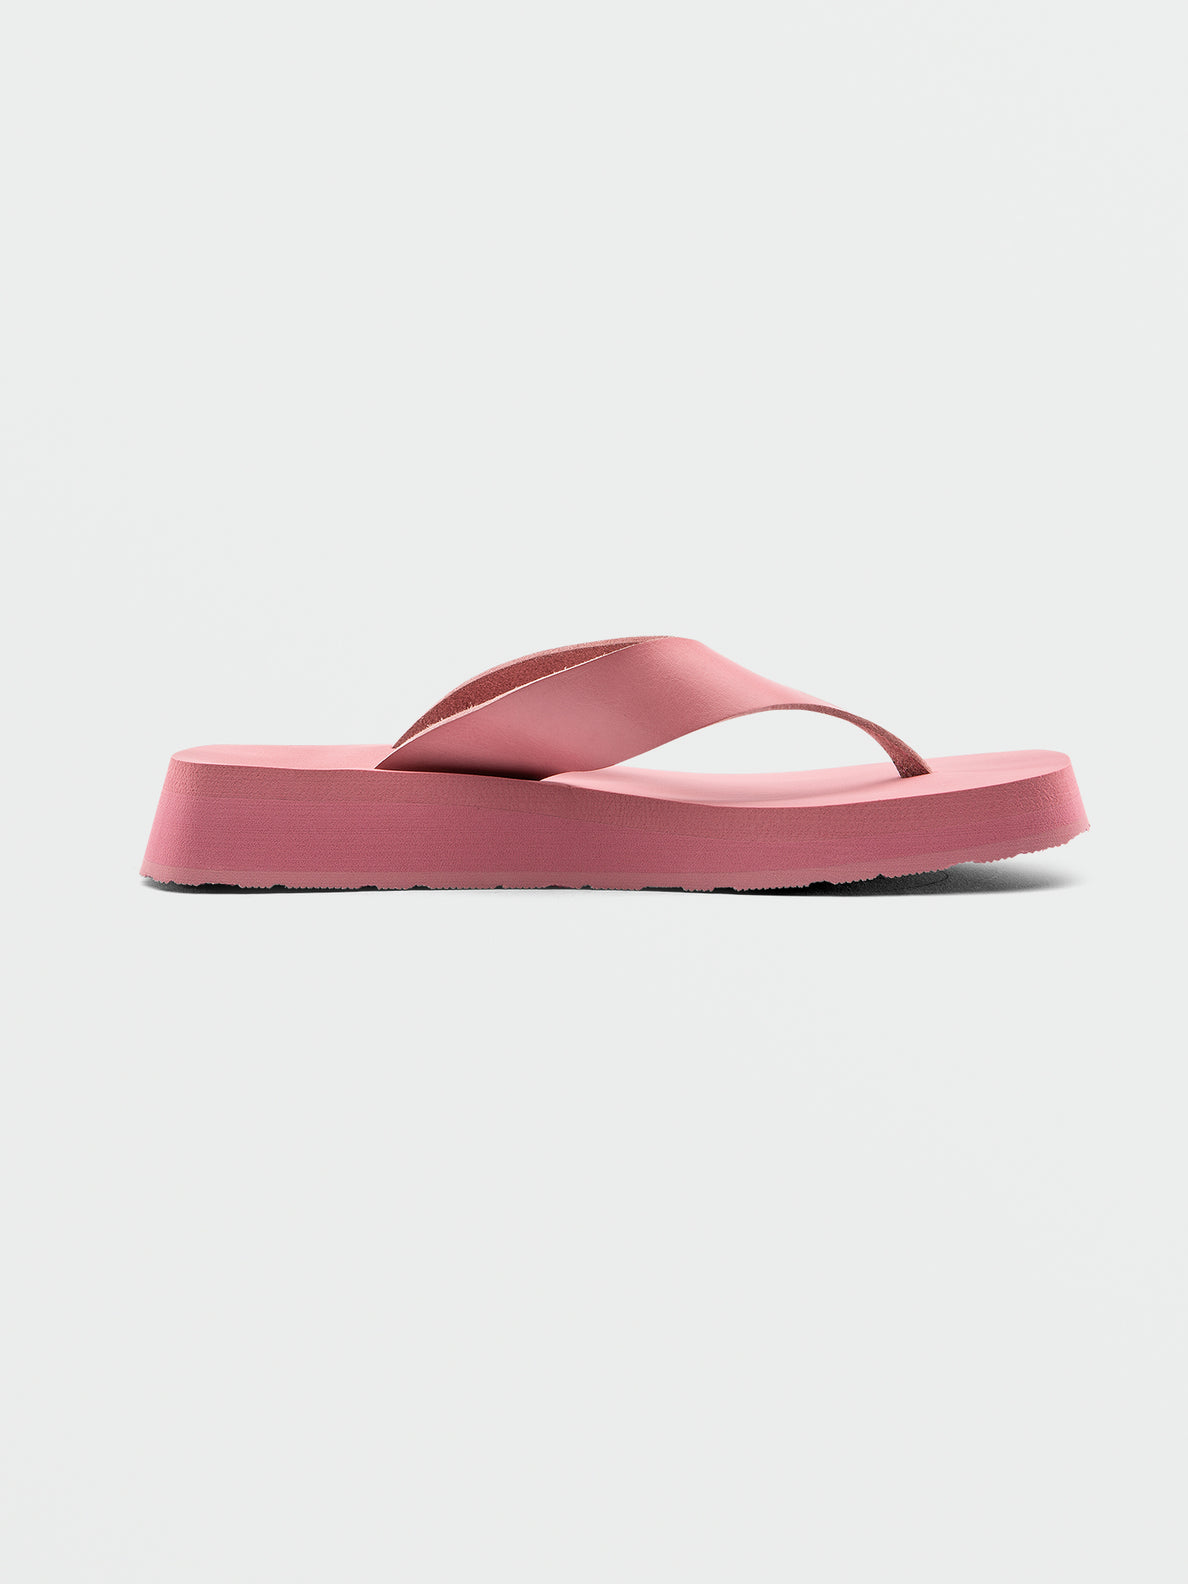 Not Ur Moms Platform Sandals - Desert Pink